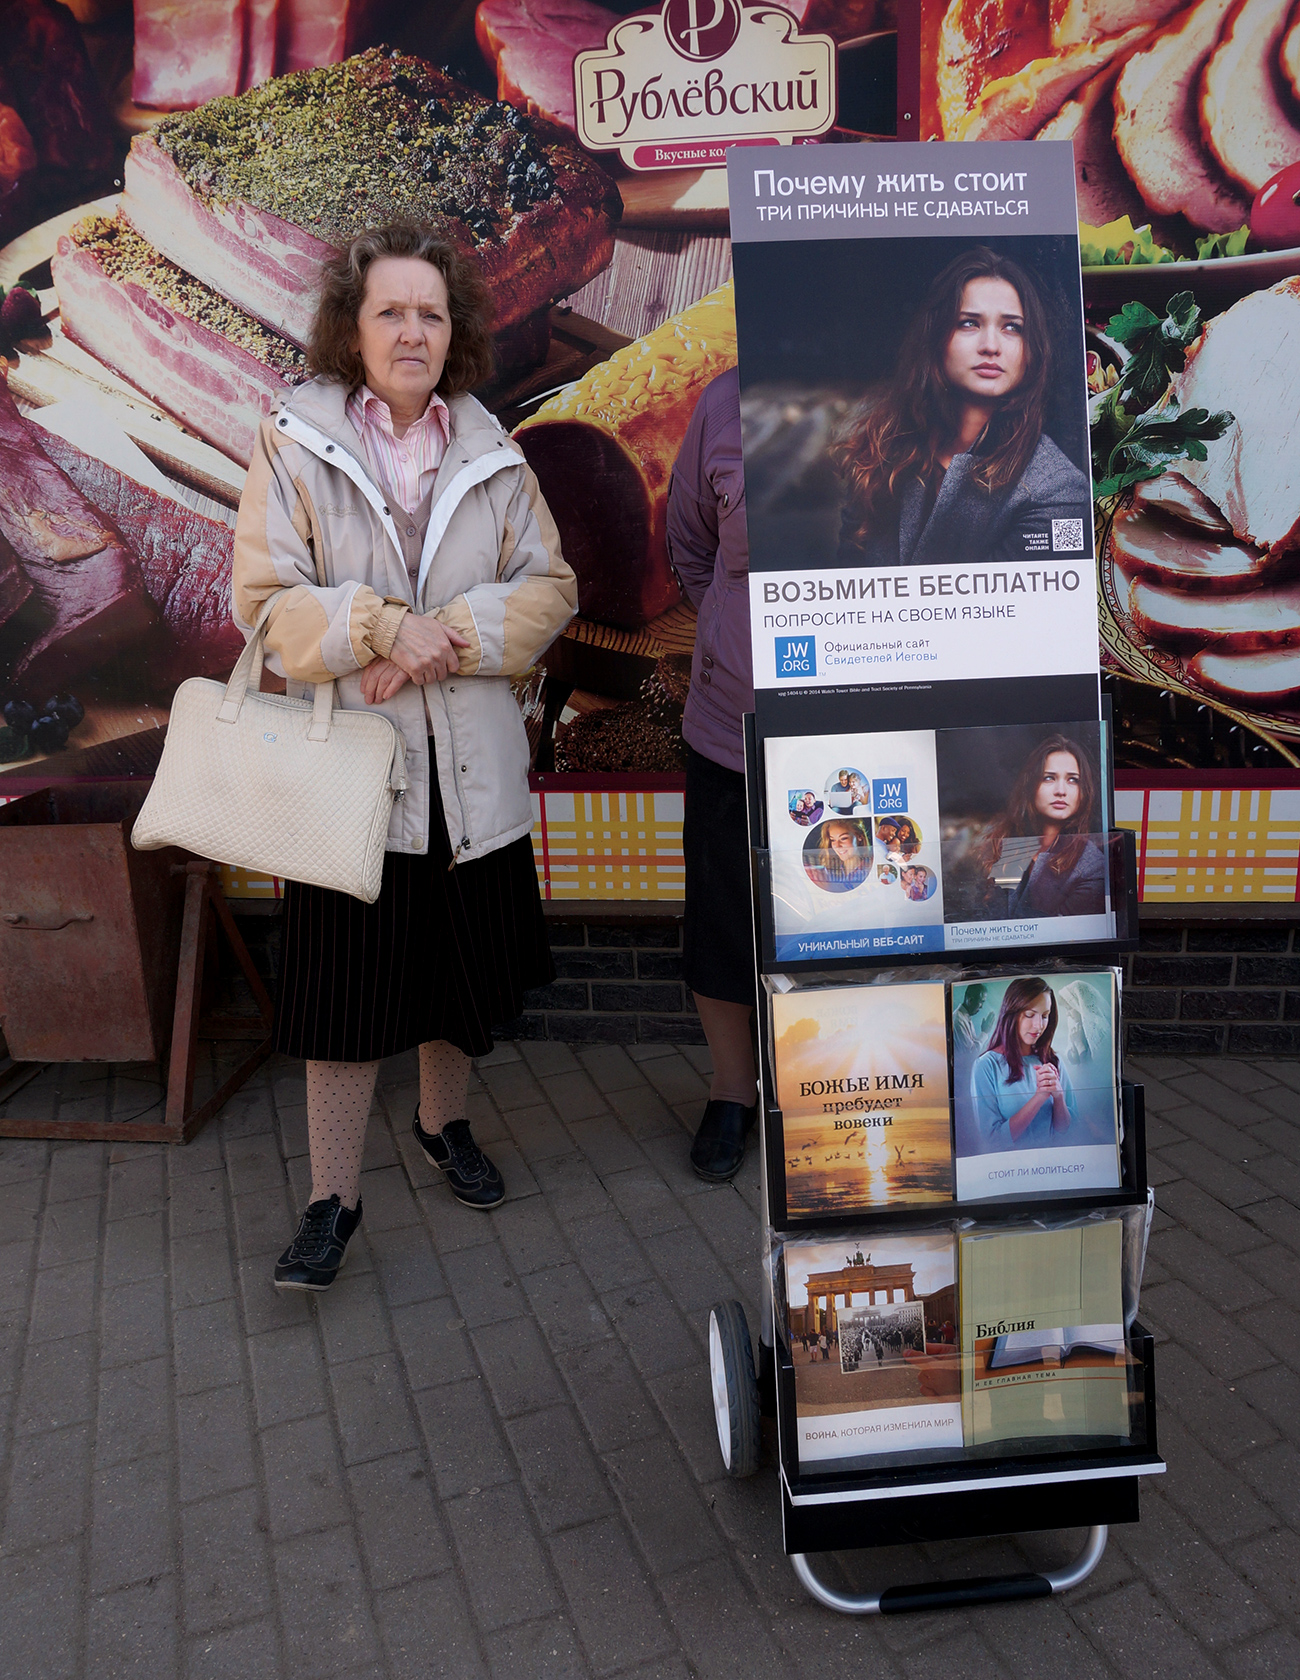 Mitglieder der Organisation sind häufig auf der Straße zu sehen. An Ständen verteilen sie Flyer und Bücher, wie auf diesem Foto, das im Moskauer Gebiet gemacht wurde. / Alexander Artemenkow/TASS